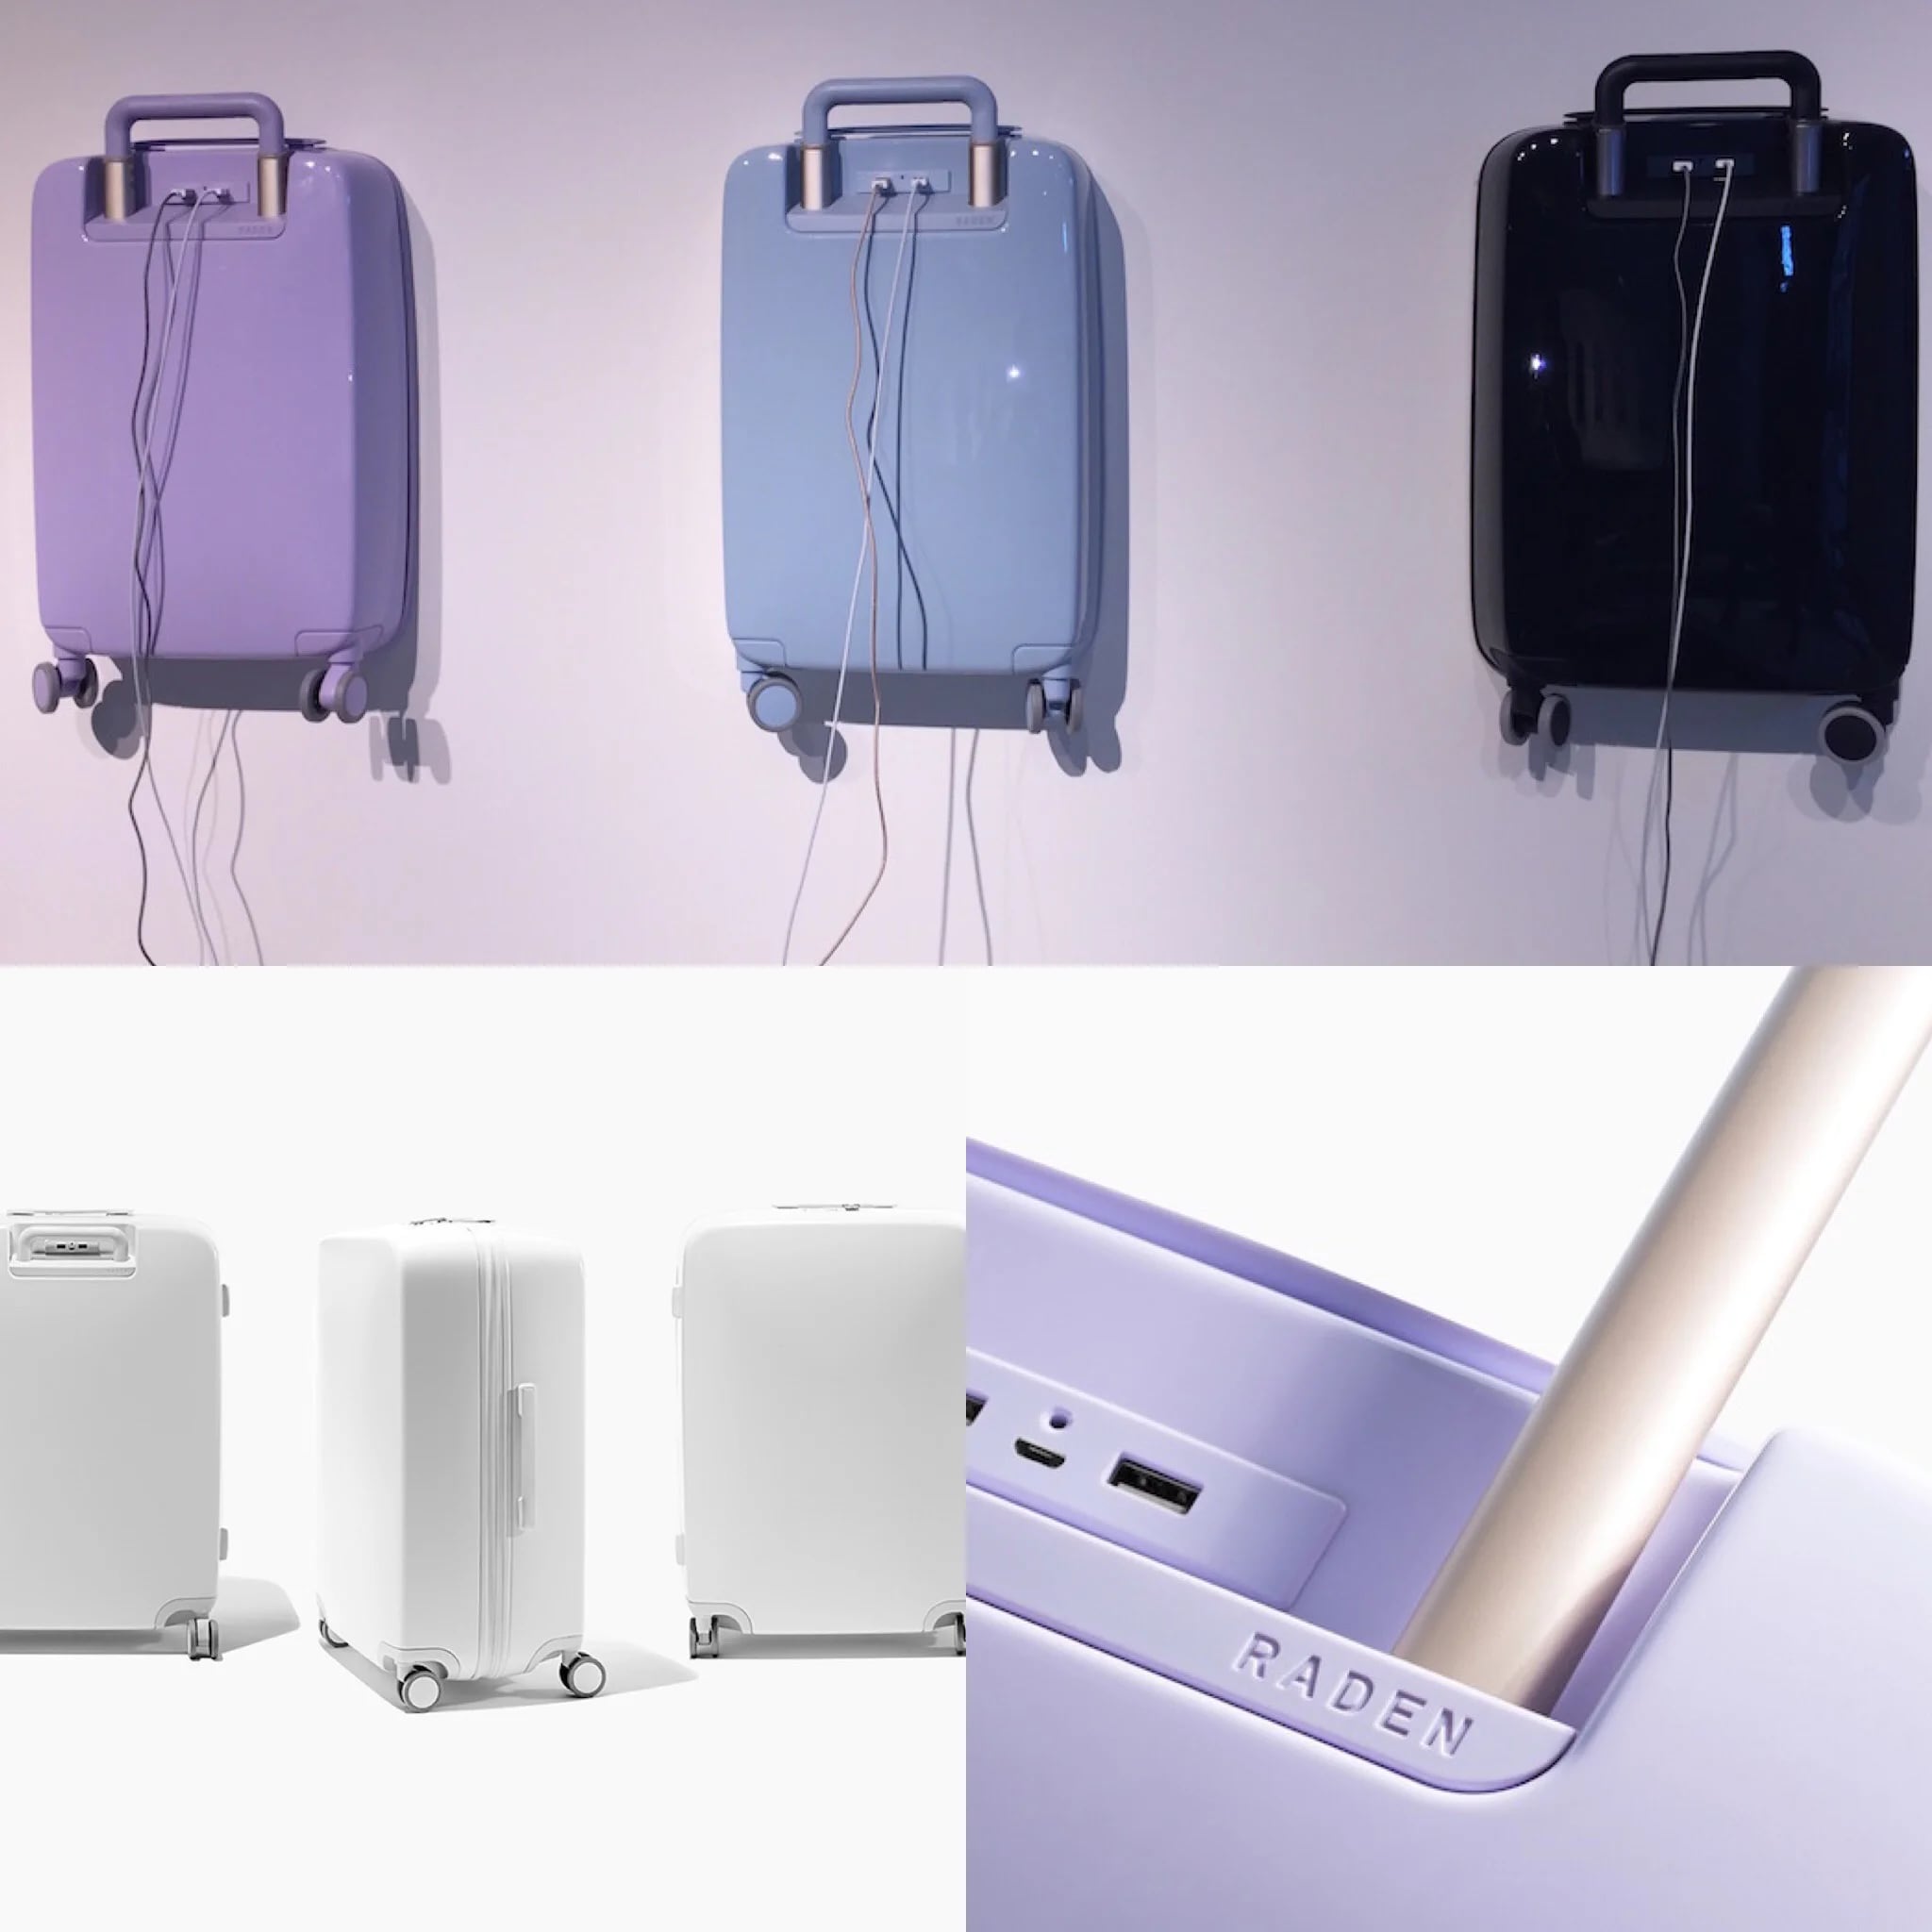 Las maletas Raden cuentan con tres entradas USB que permiten cargar dispositivos móviles sin depender de las tomas eléctricas en aeropuertos